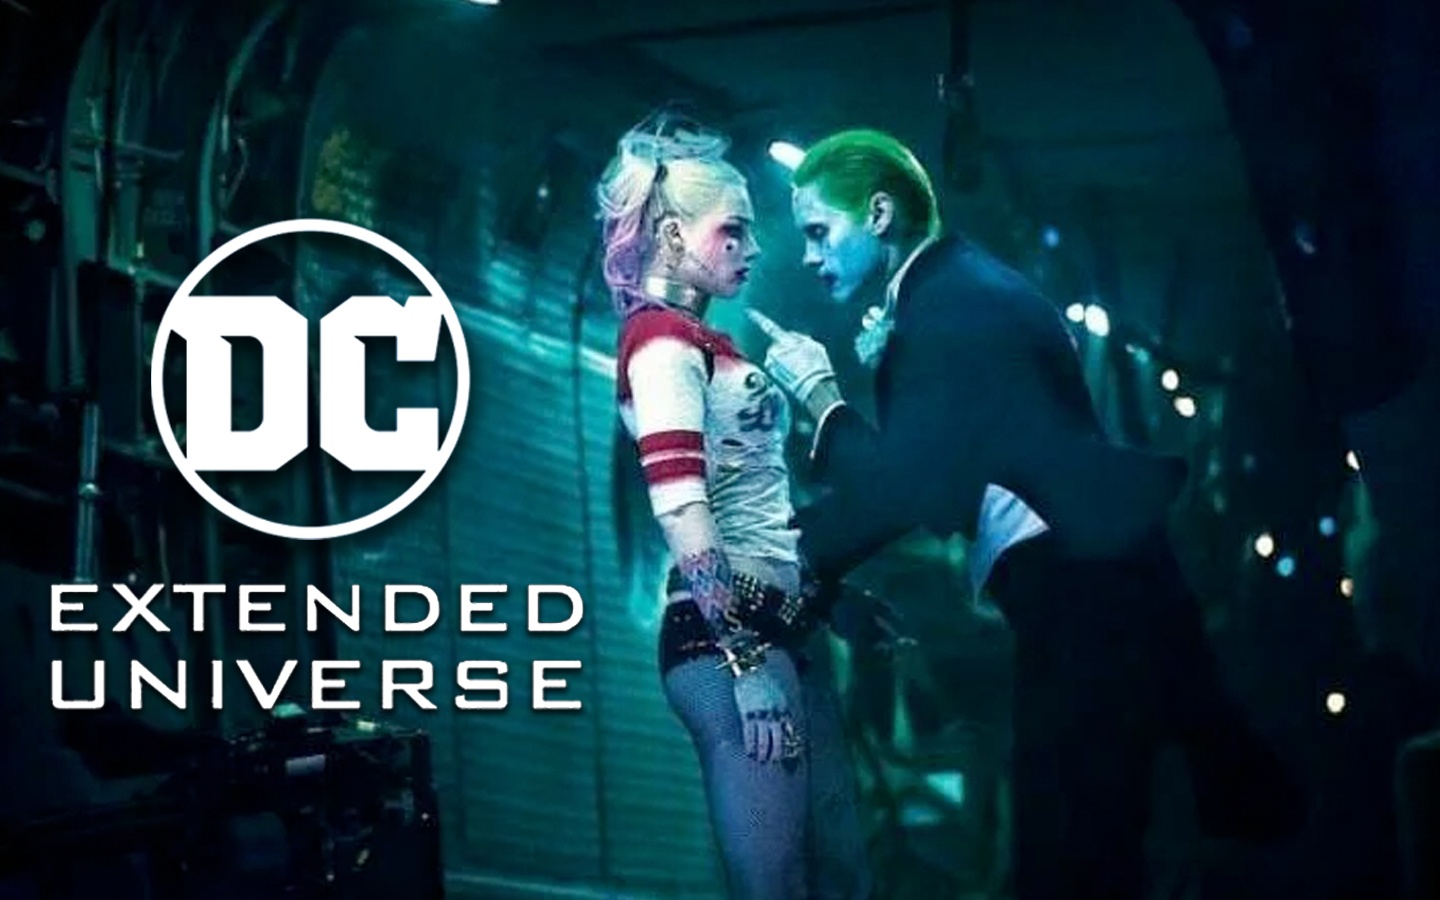 Harley Quinn vs The Joker Spin-off in the Works